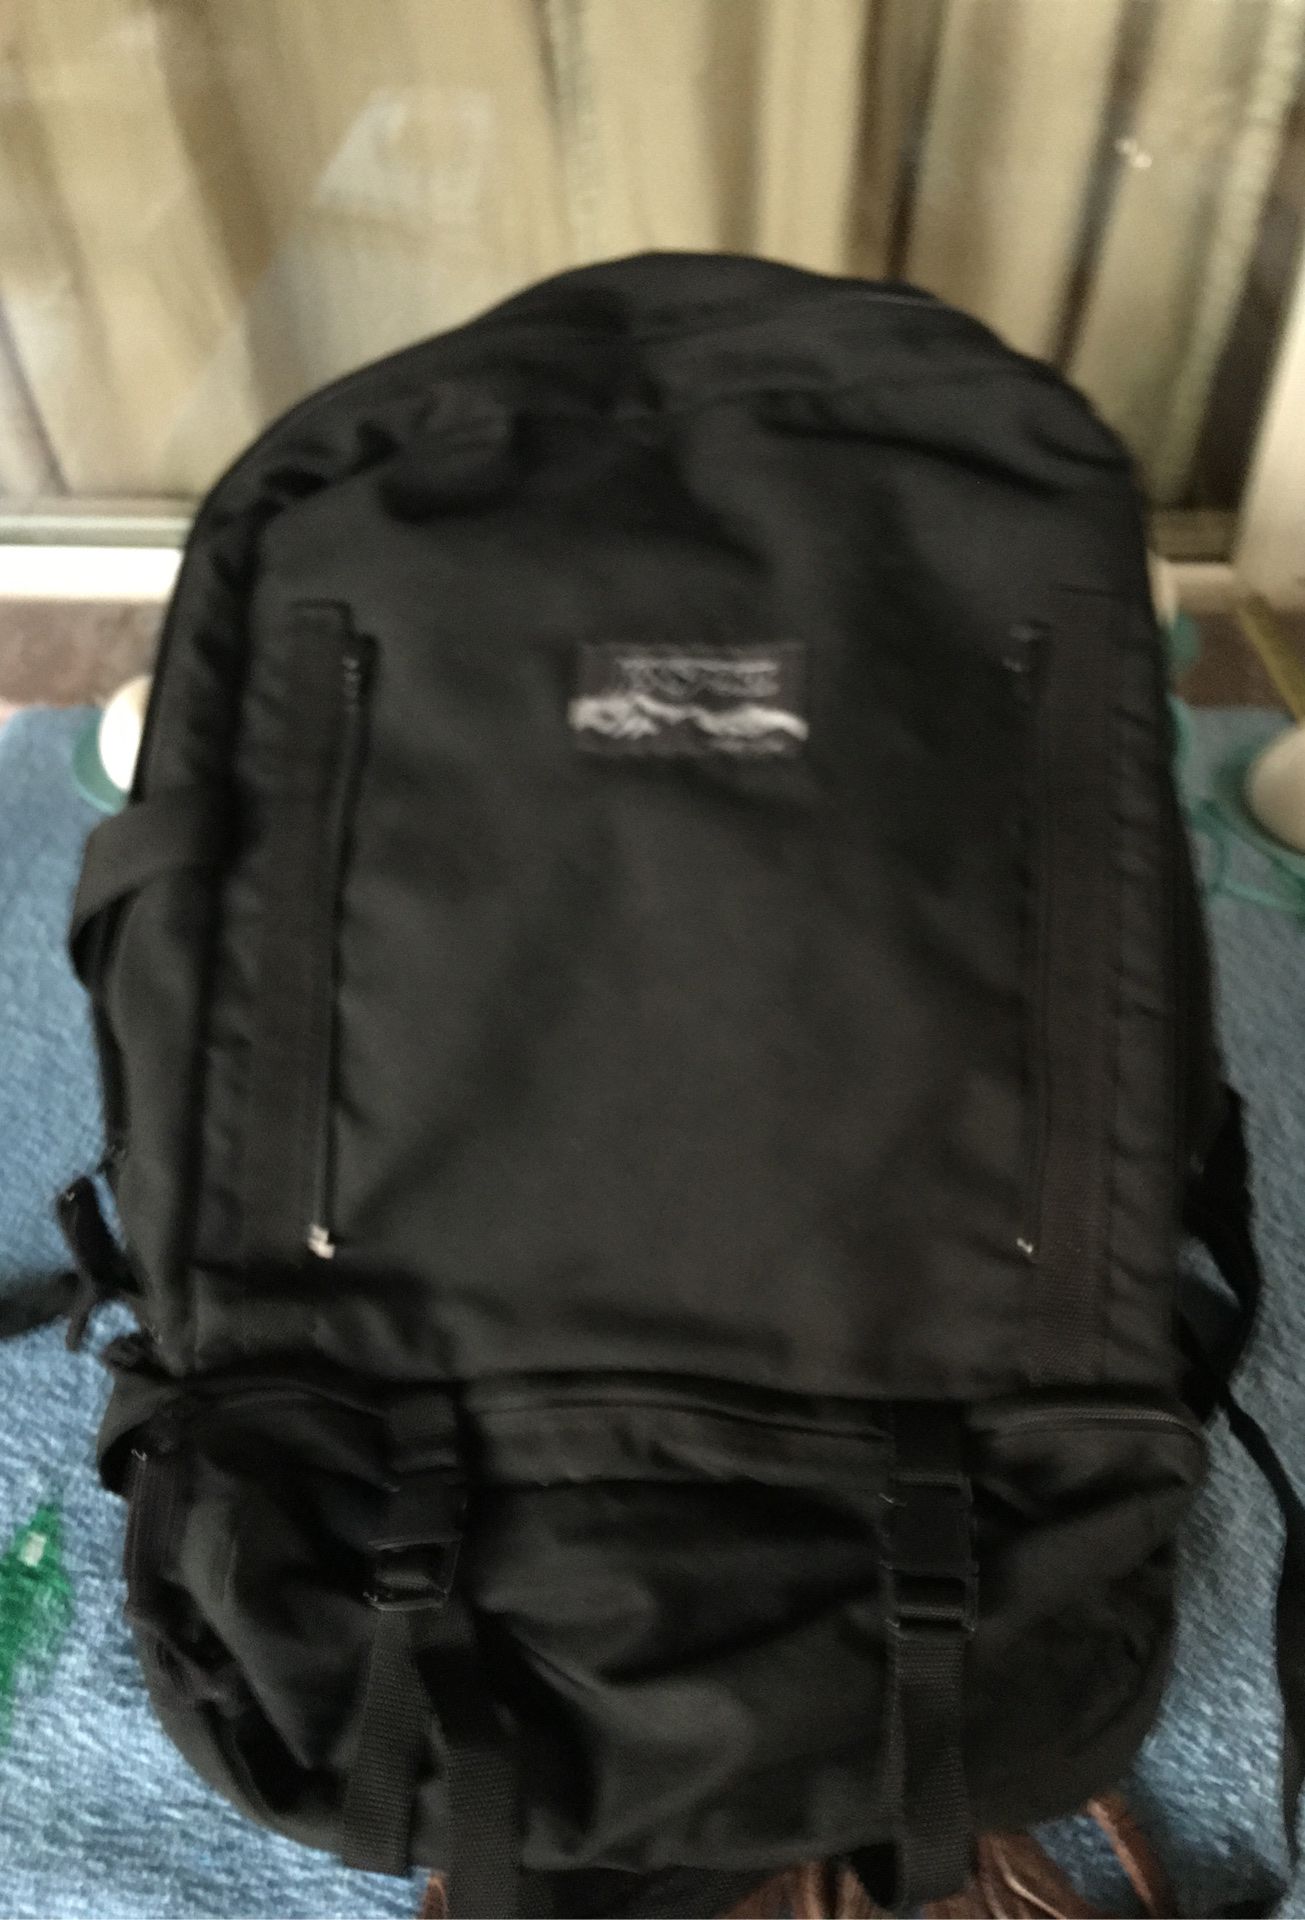 Jansport backpack 25”long(great travel bag)